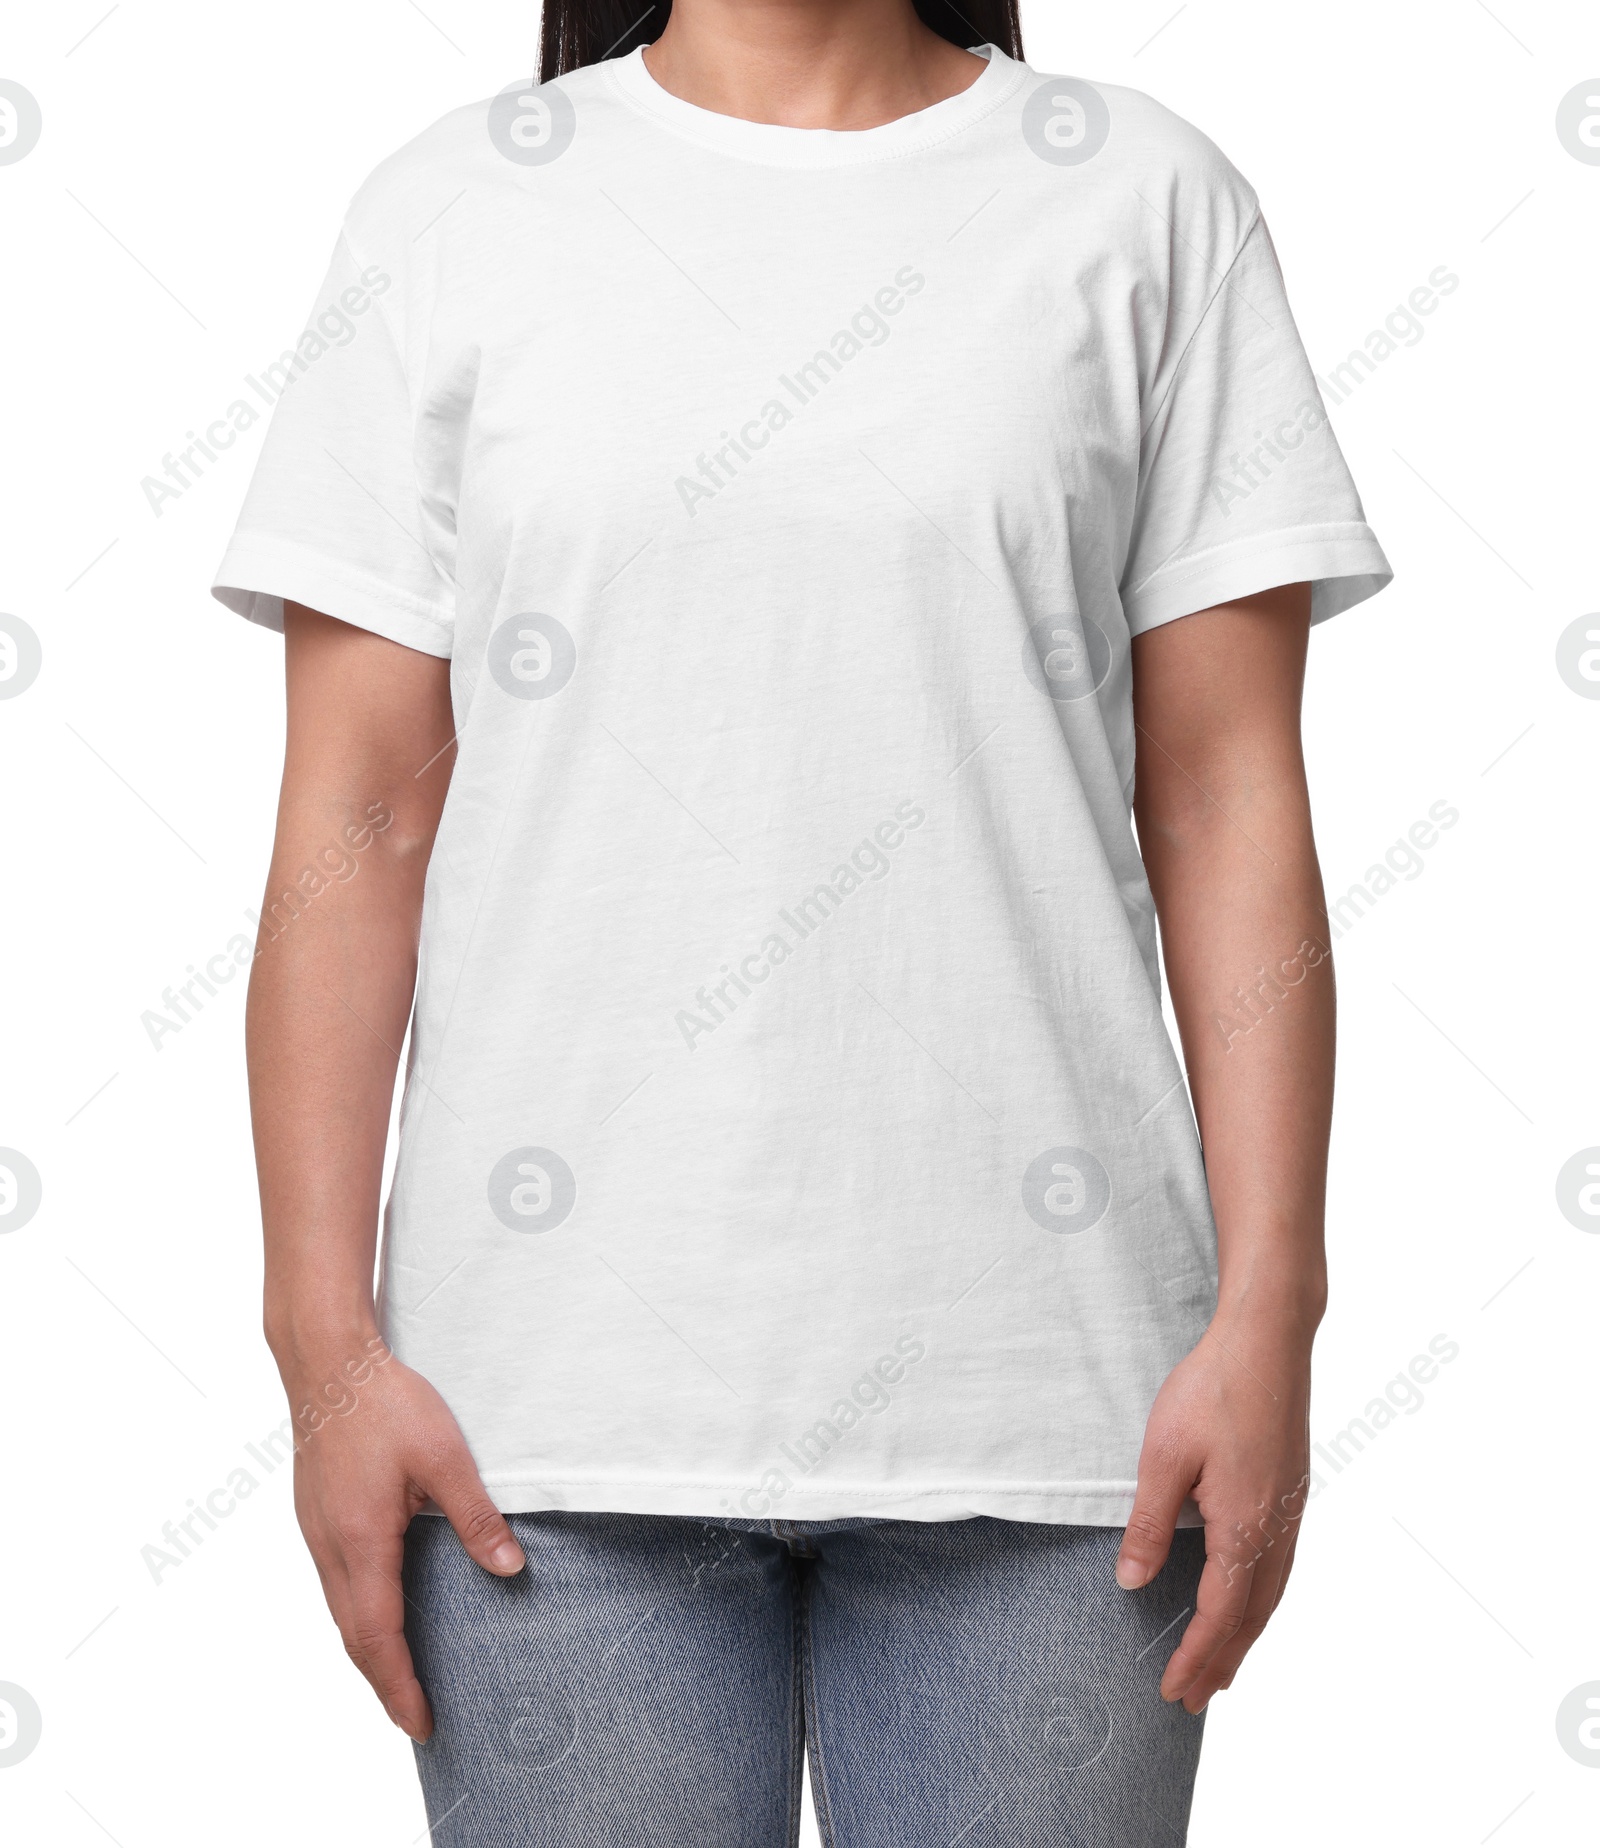 Photo of Woman wearing stylish t-shirt on white background, closeup